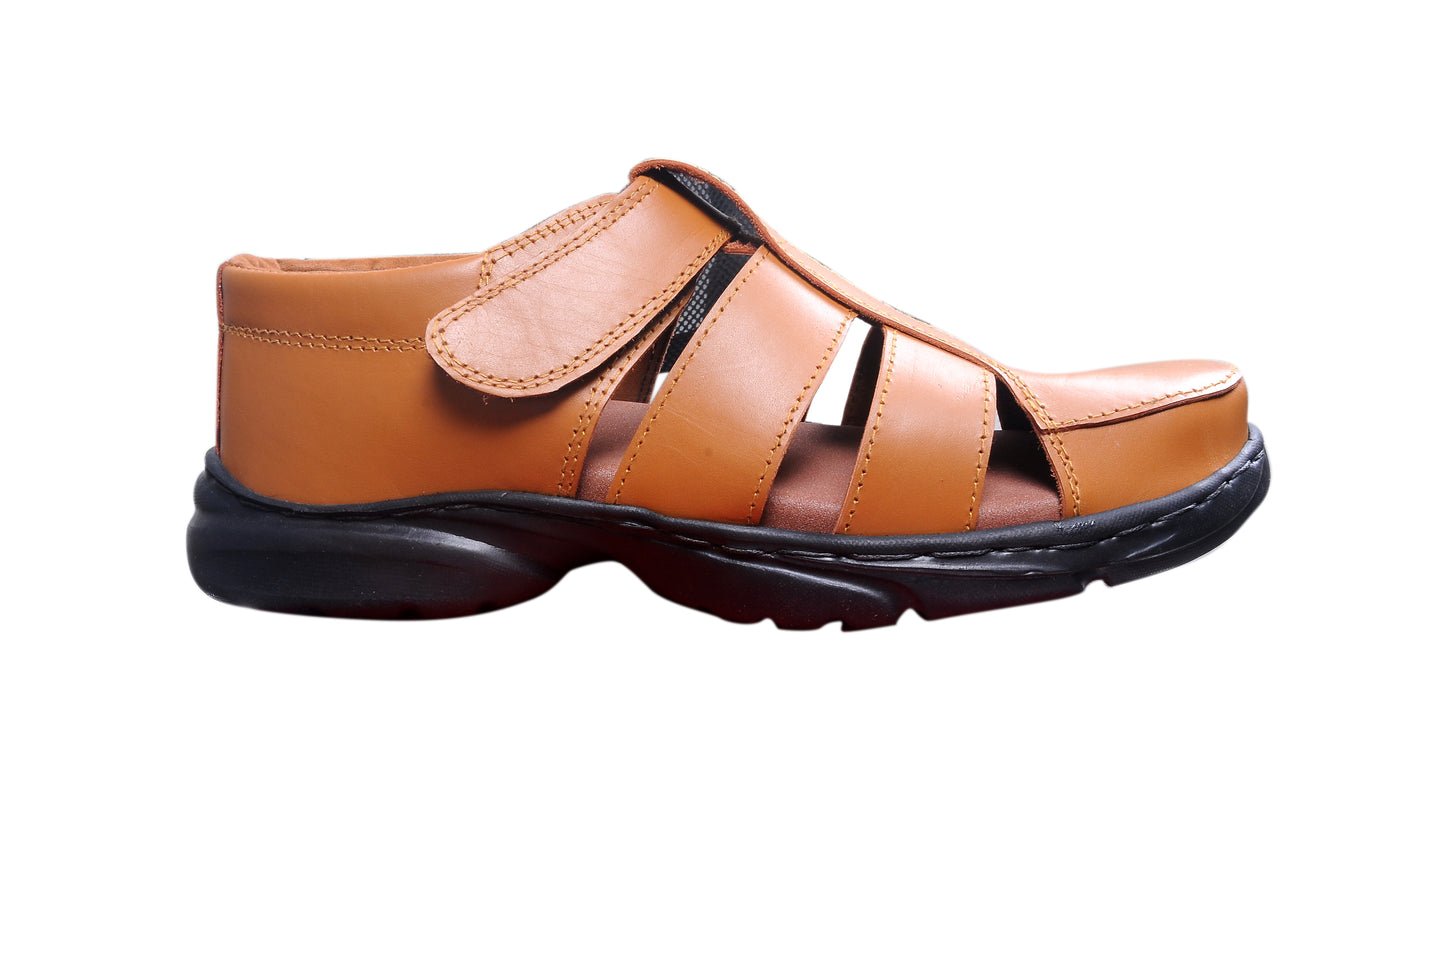 508 PU - Men-Senior Friendly Footwear - Polyurethane Sole